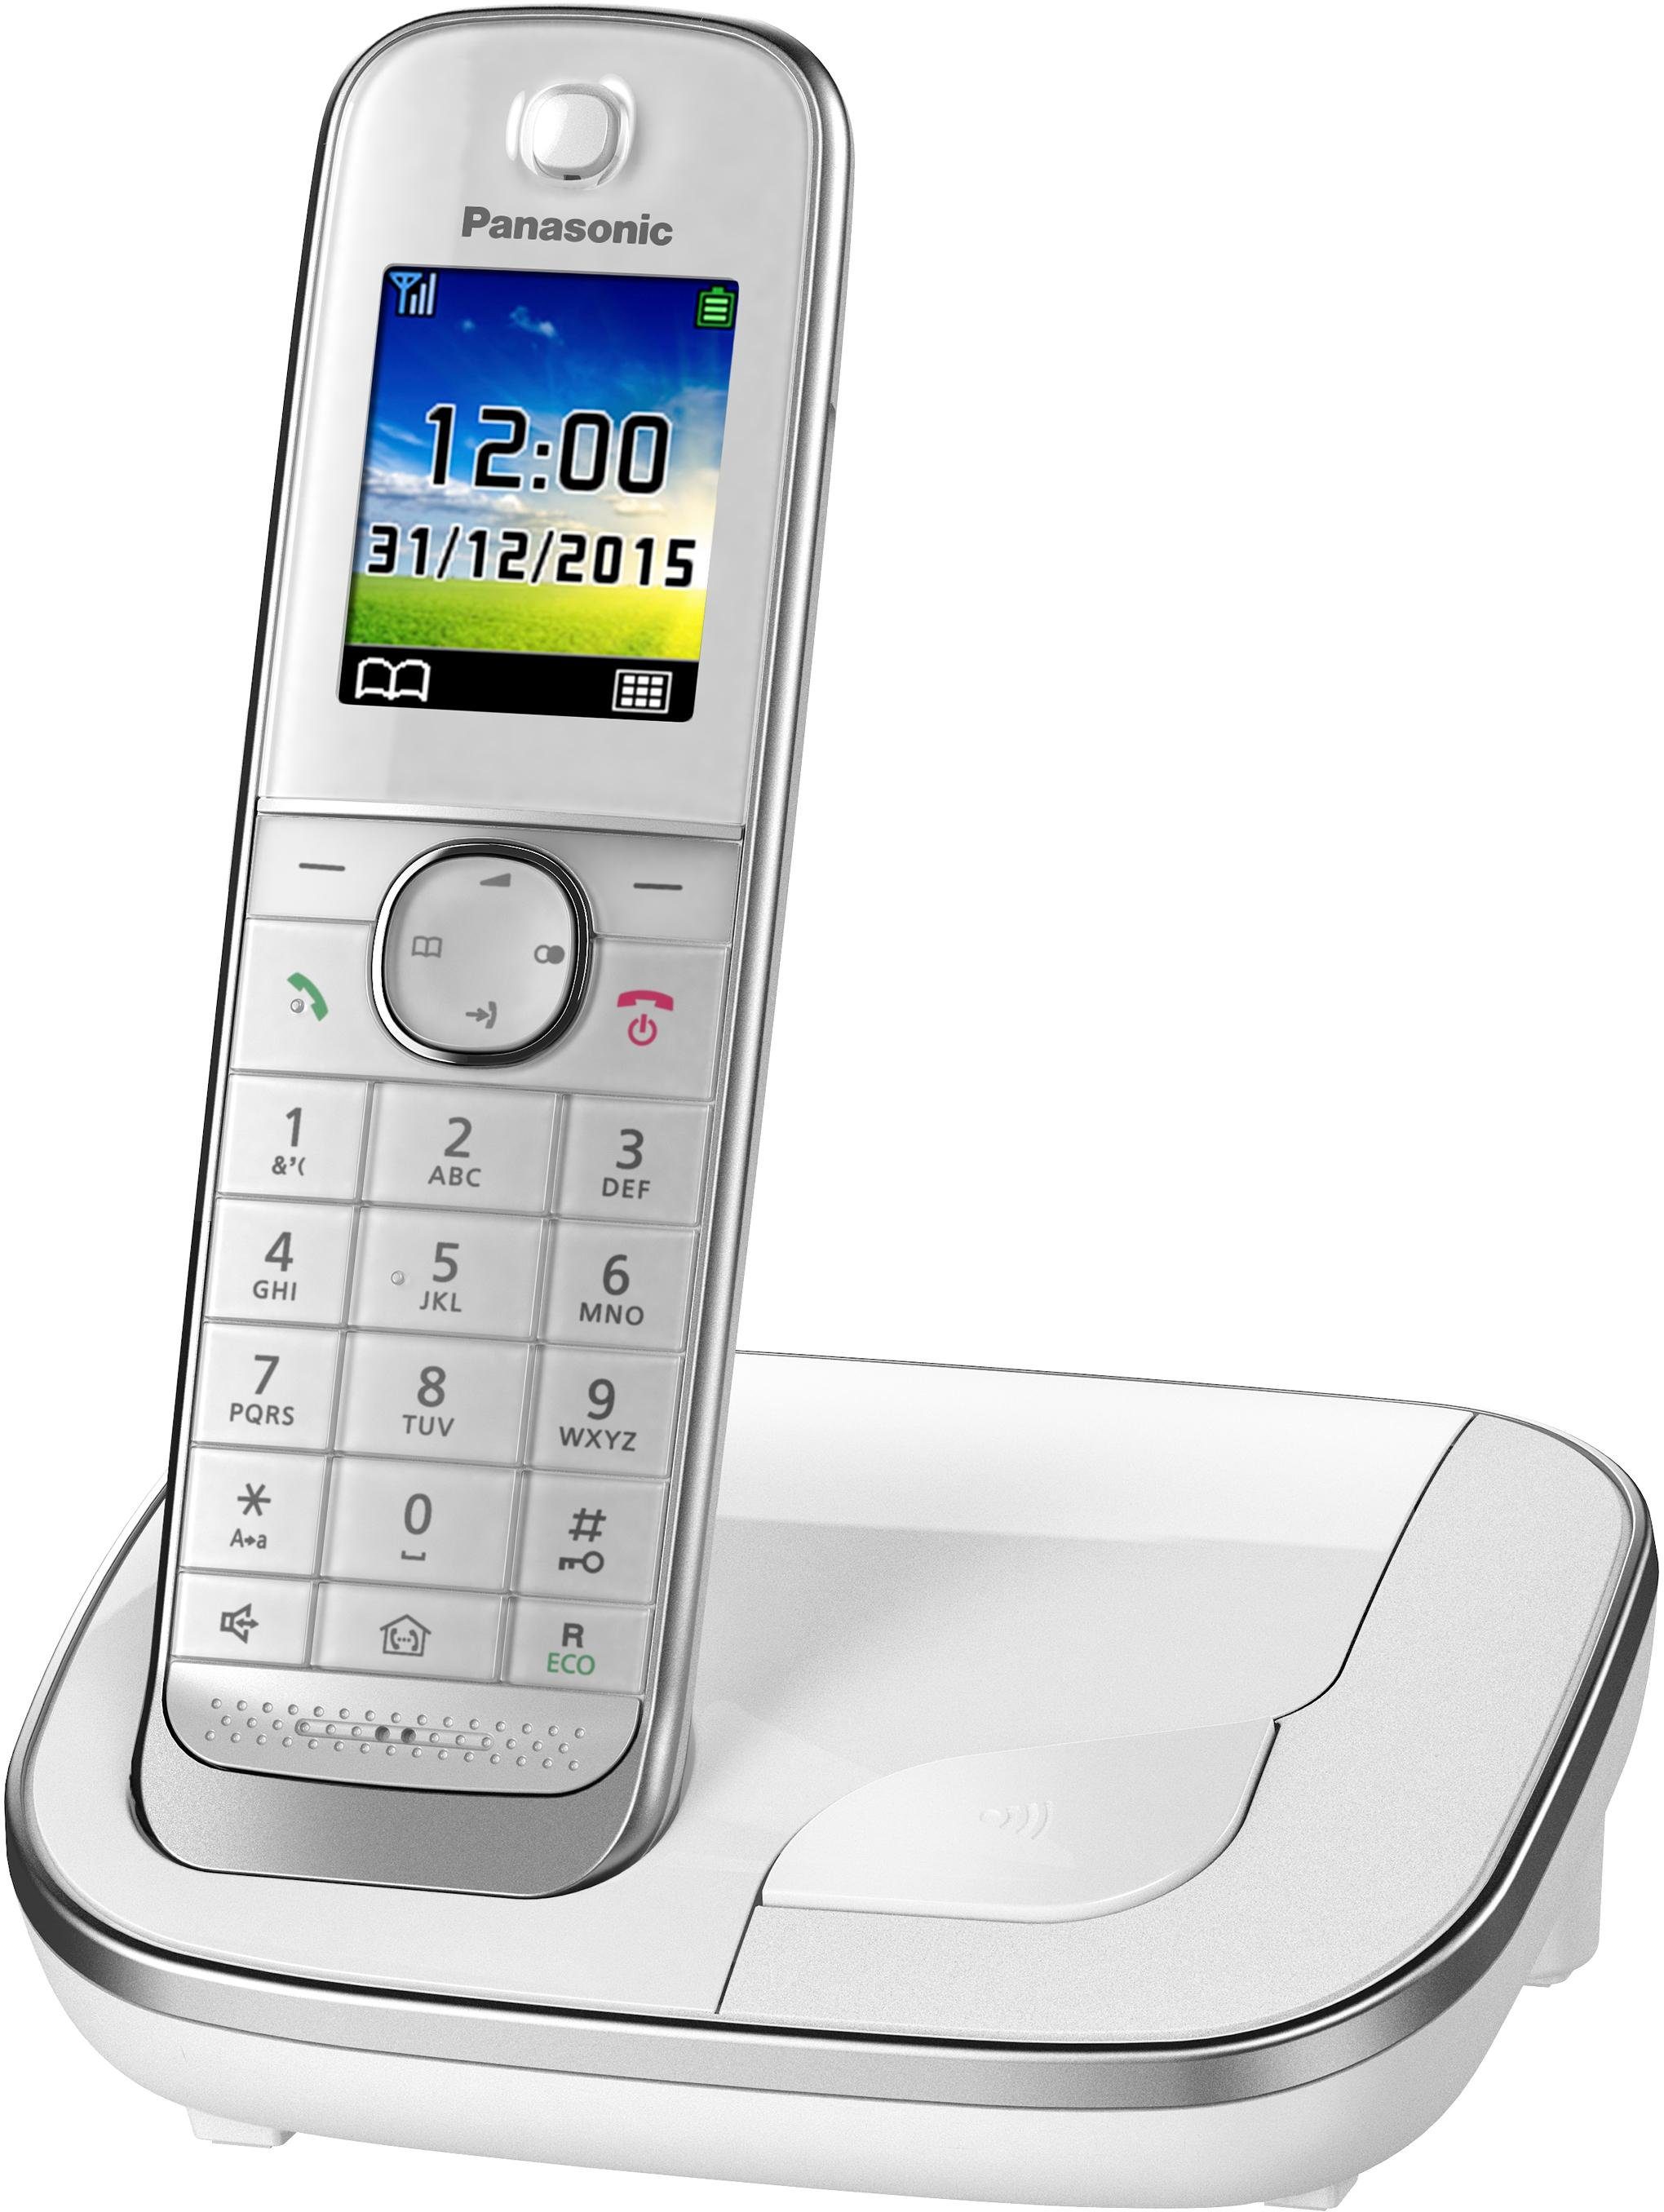 Panasonic KX-TGJ310 Schnurloses DECT-Telefon 1, Weckfunktion, weiß Freisprechen) (Mobilteile